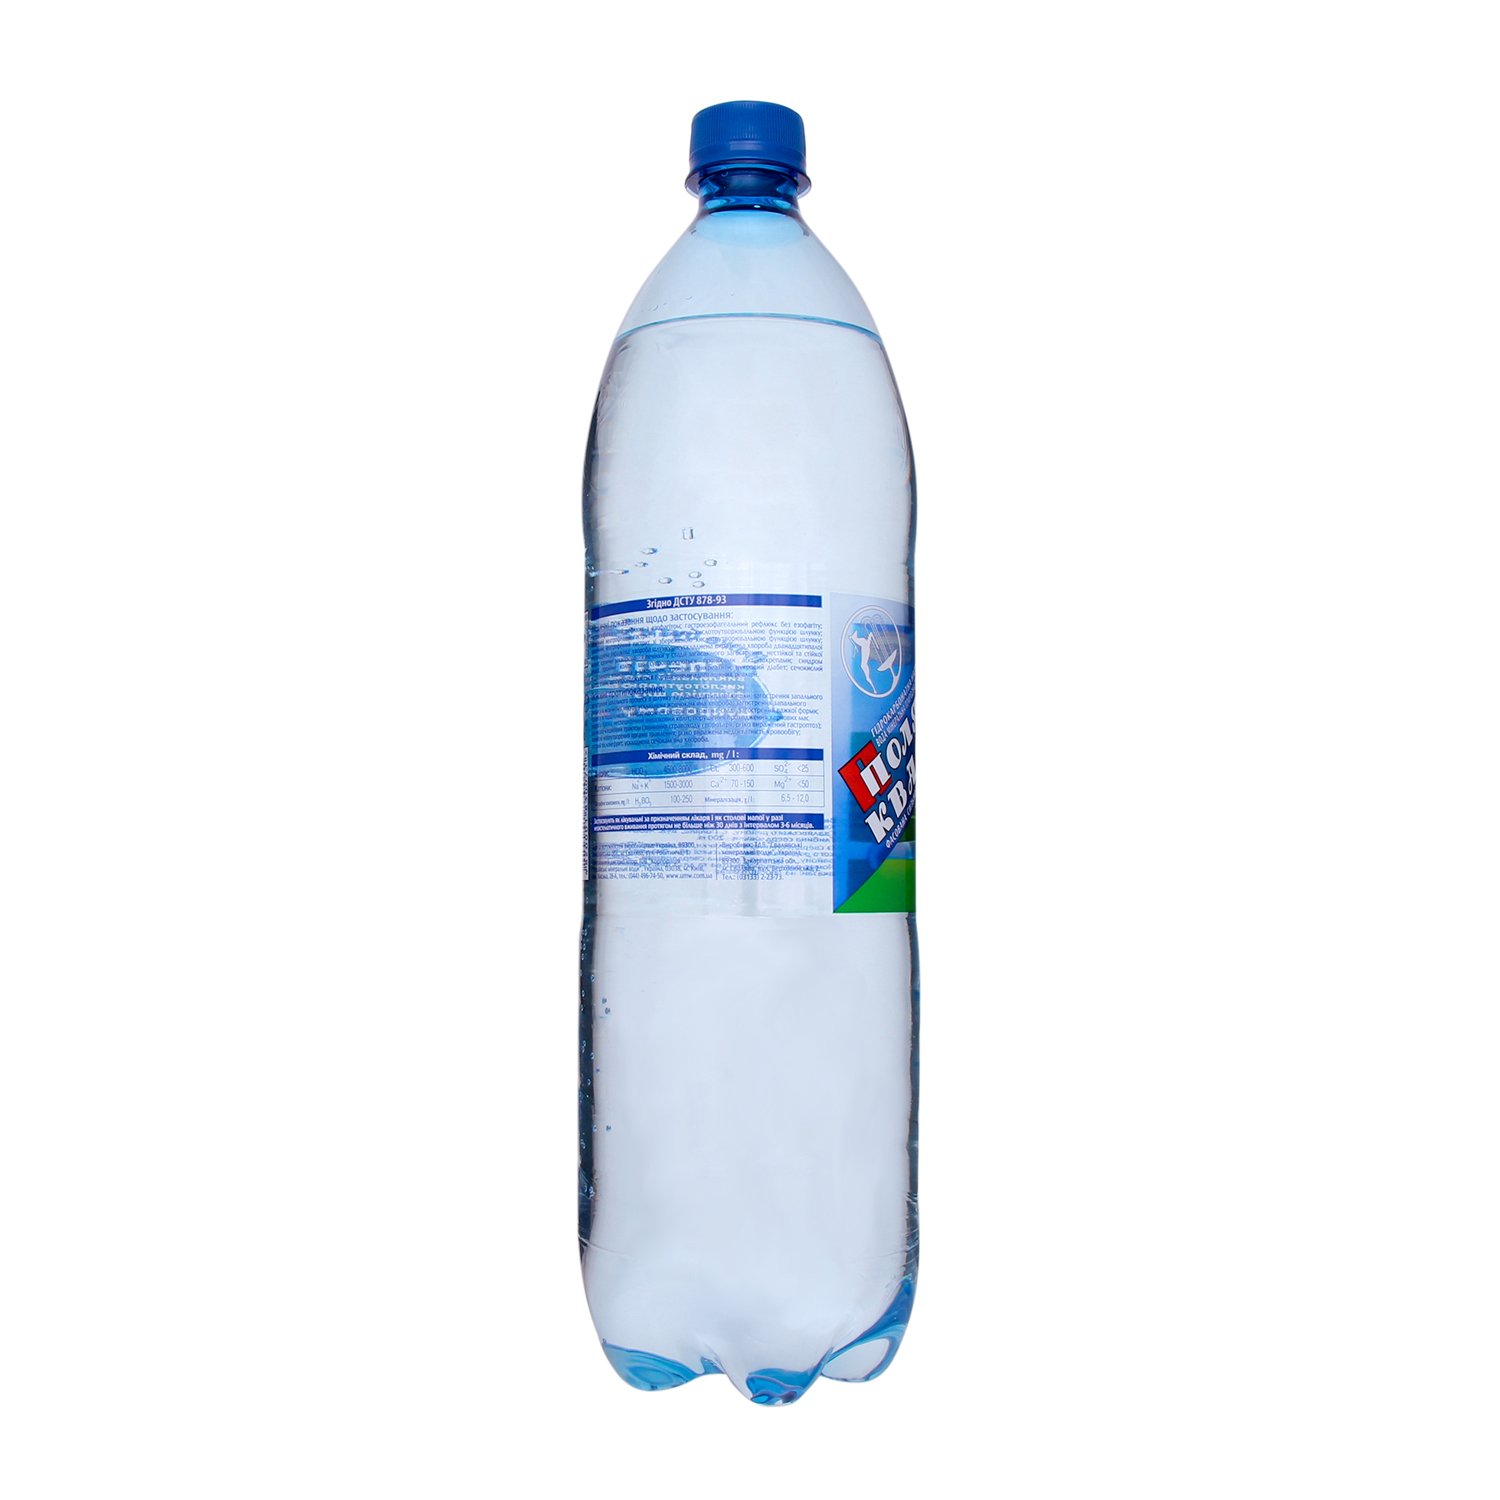 Вода минеральная Поляна Квасова лечебно-столовая сильногазированная 1.5 л - фото 2